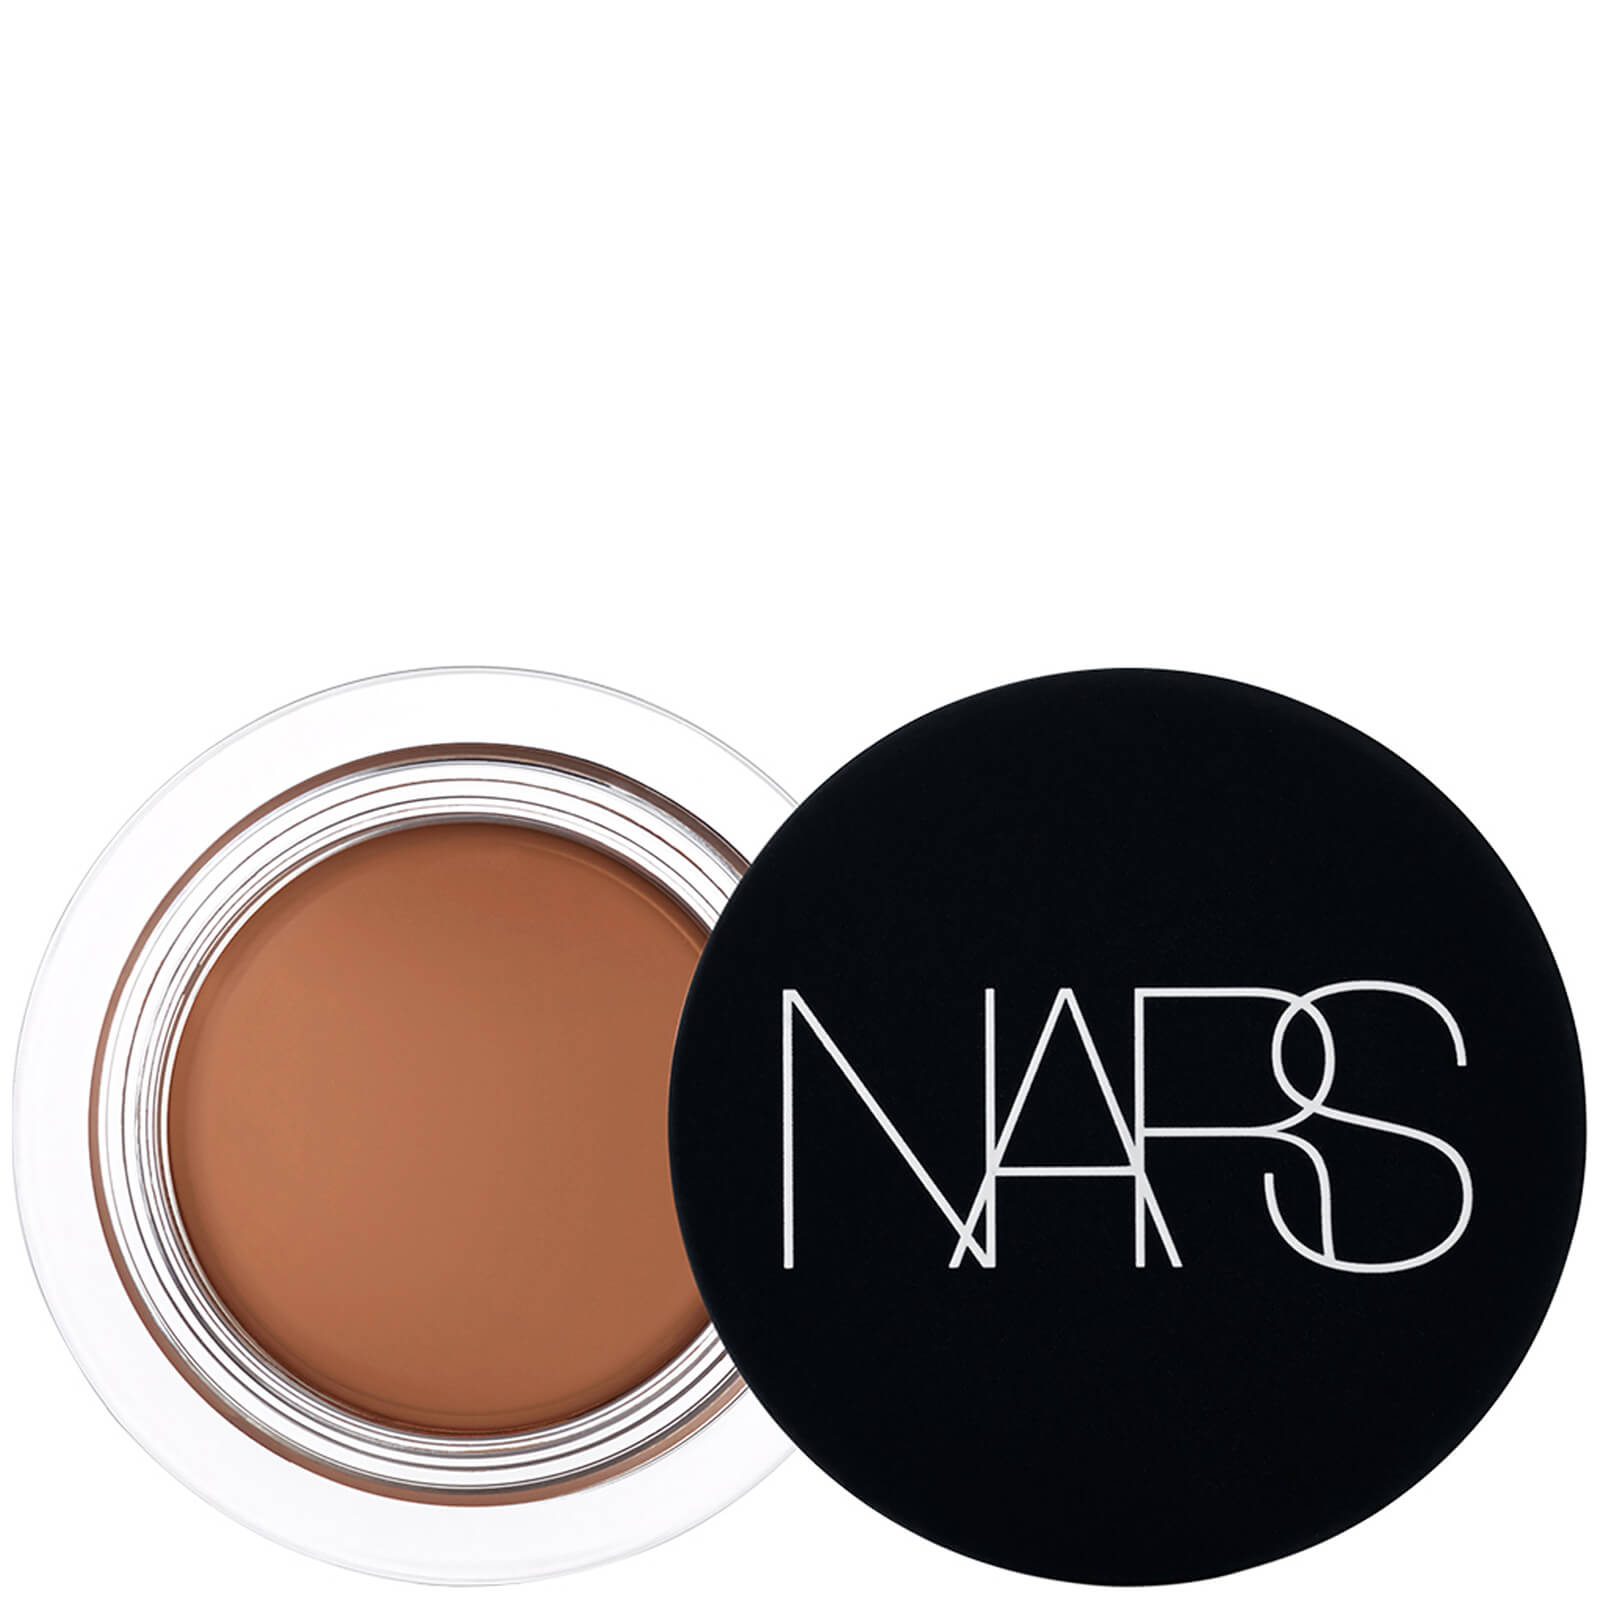 NARS Soft Matte Complete Concealer 6.2g (Various Shades) - Cafe